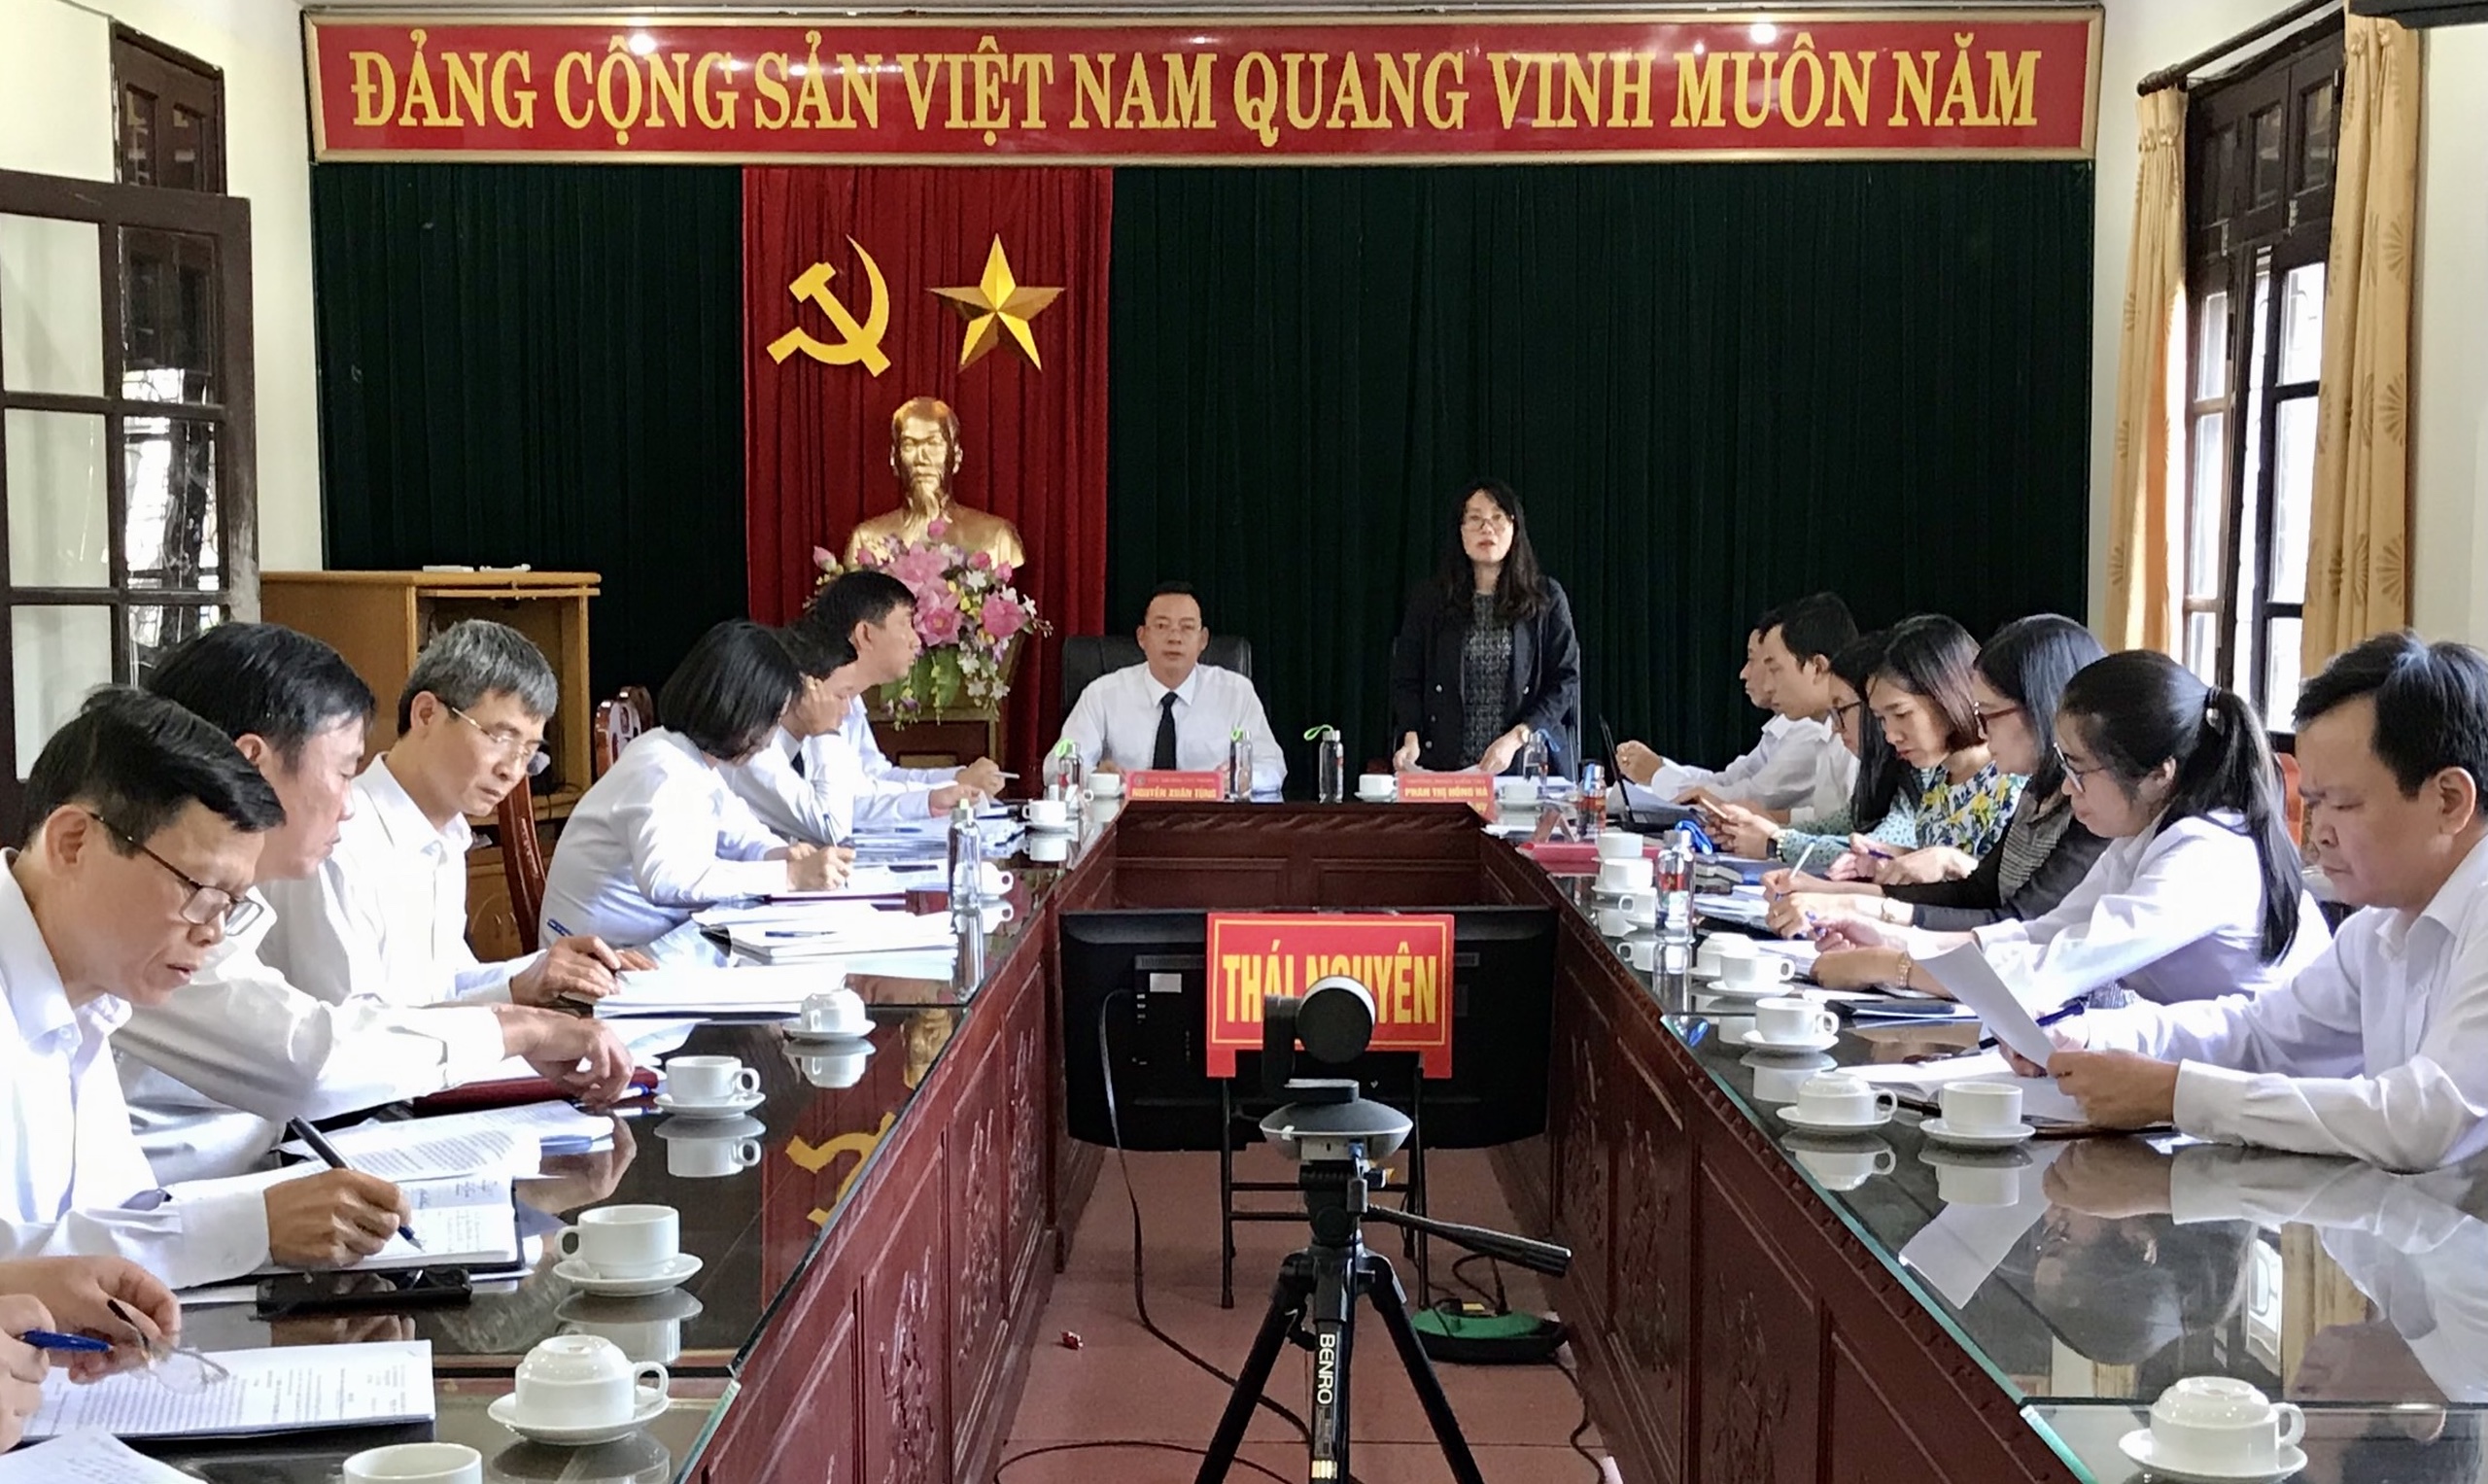 Đoàn kiểm tra của Bộ Tư pháp kiểm tra tình hình tổ chức, hoạt động tại Cục Thi hành án dân sự tỉnh Thái Nguyên